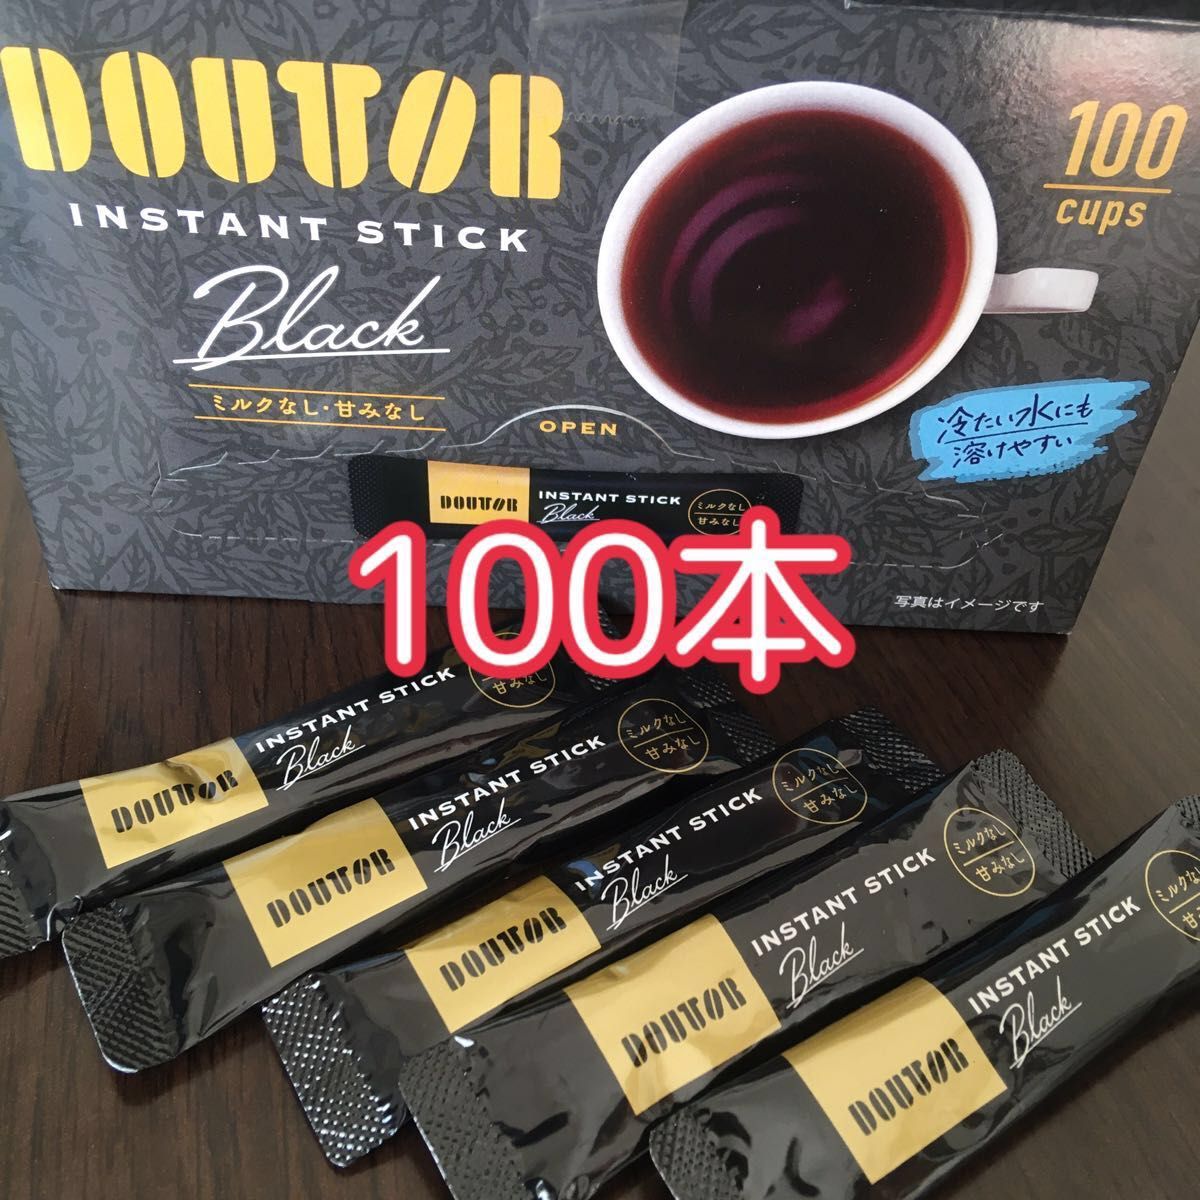 ドトール インスタントコーヒー スティックコーヒー 100本セット - 酒